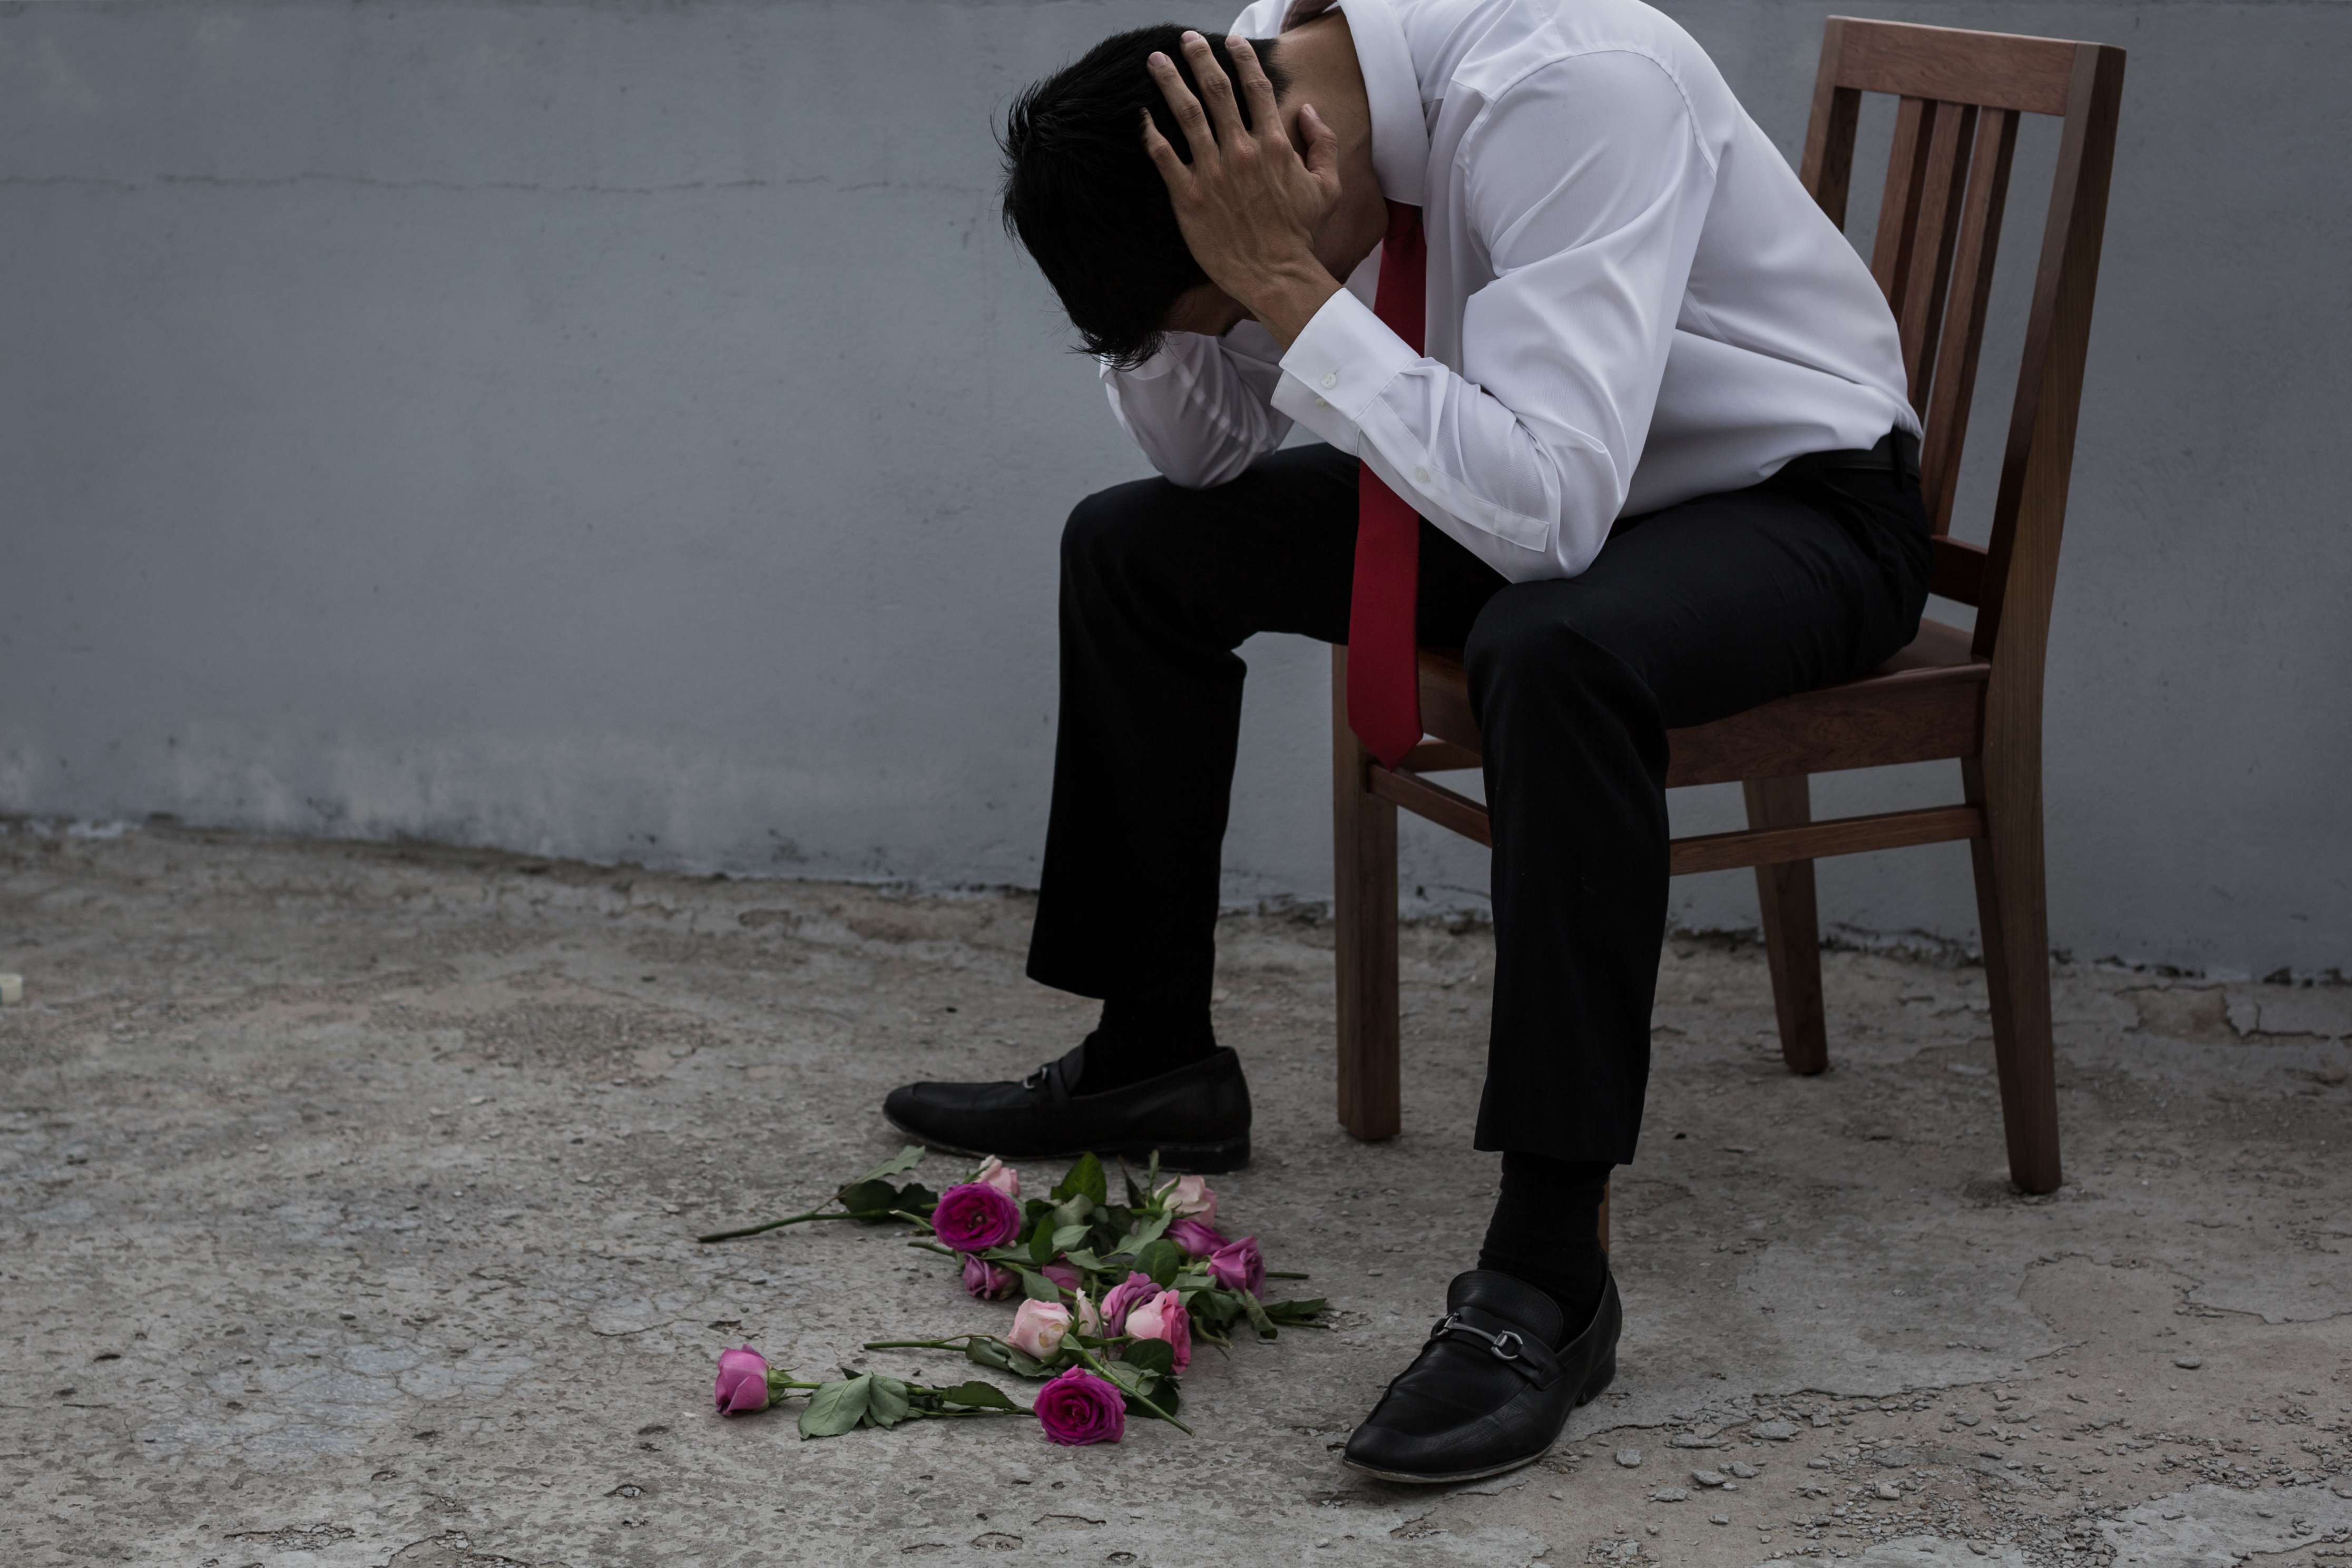 Ein entmutigter Mann mit gebrochenem Herzen, nachdem er zurückgewiesen wurde | Quelle: Shutterstock